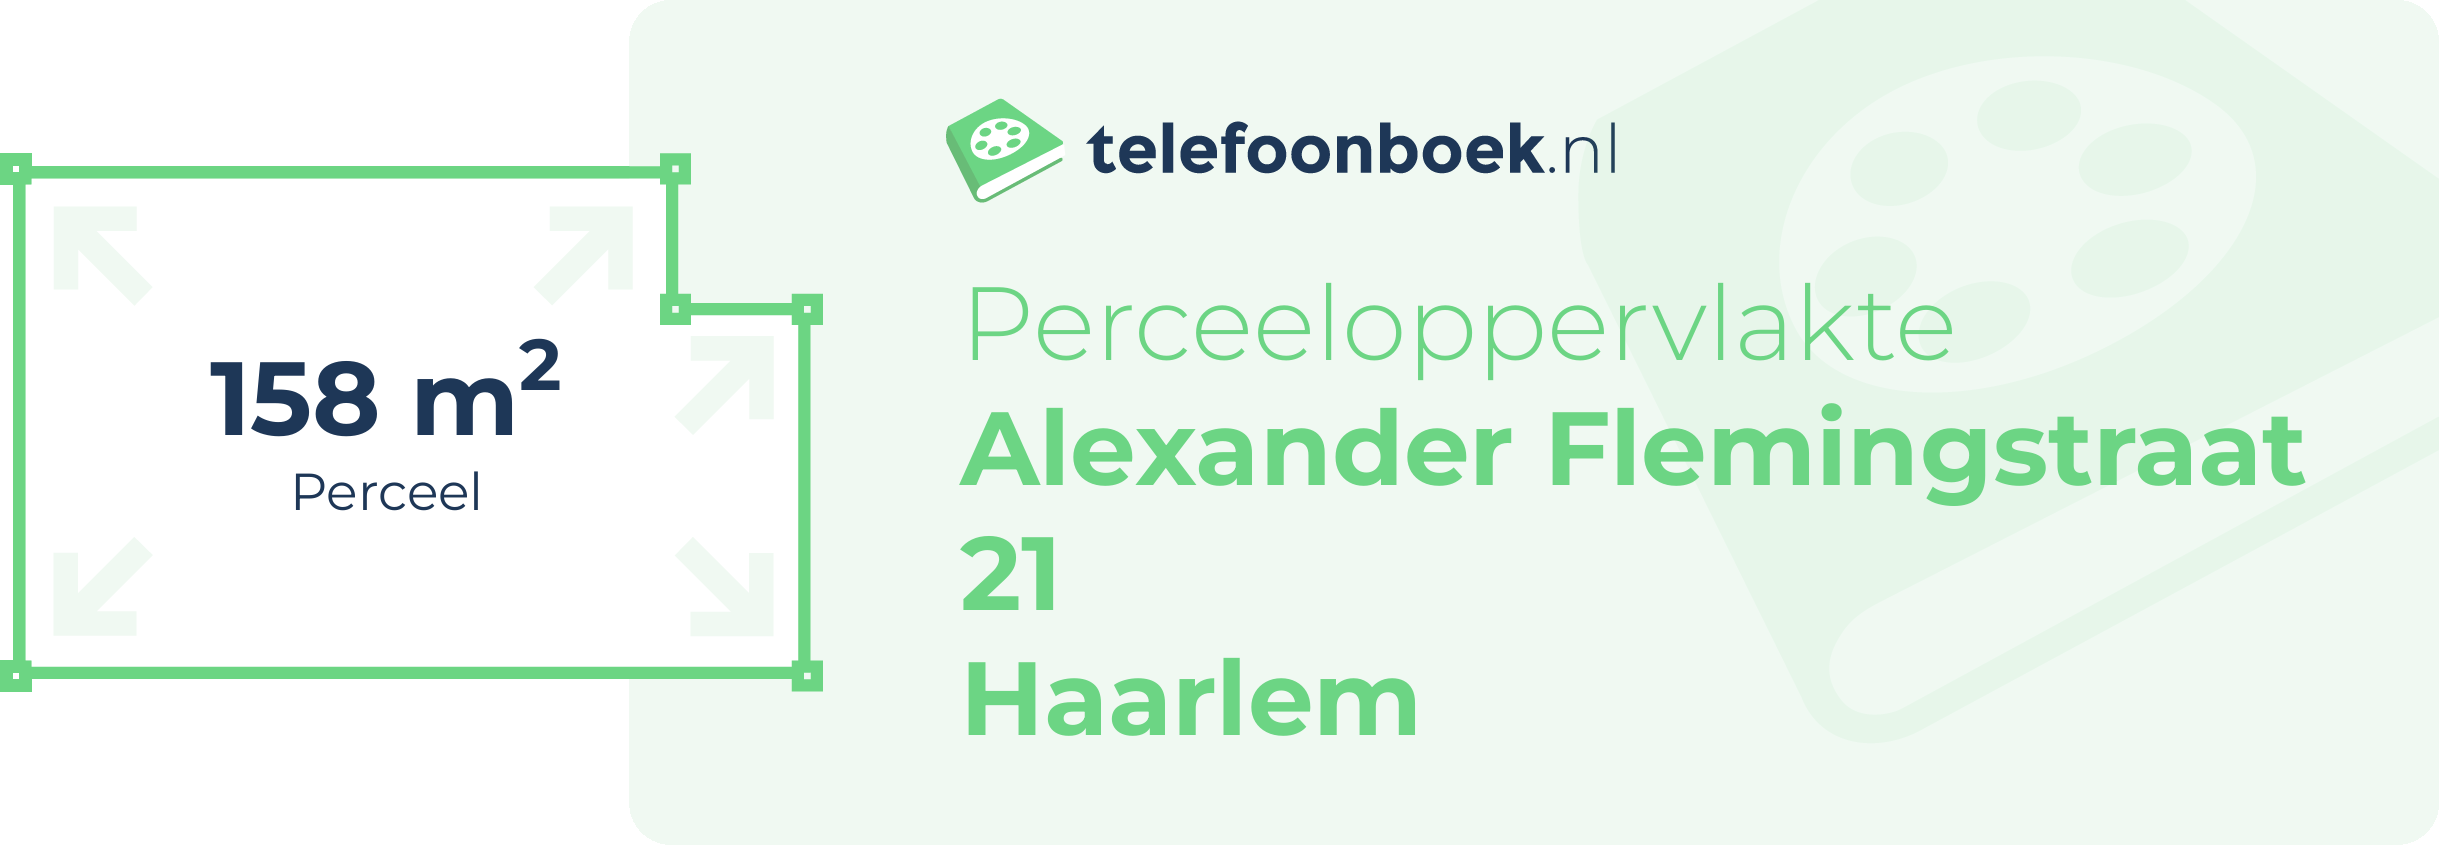 Perceeloppervlakte Alexander Flemingstraat 21 Haarlem